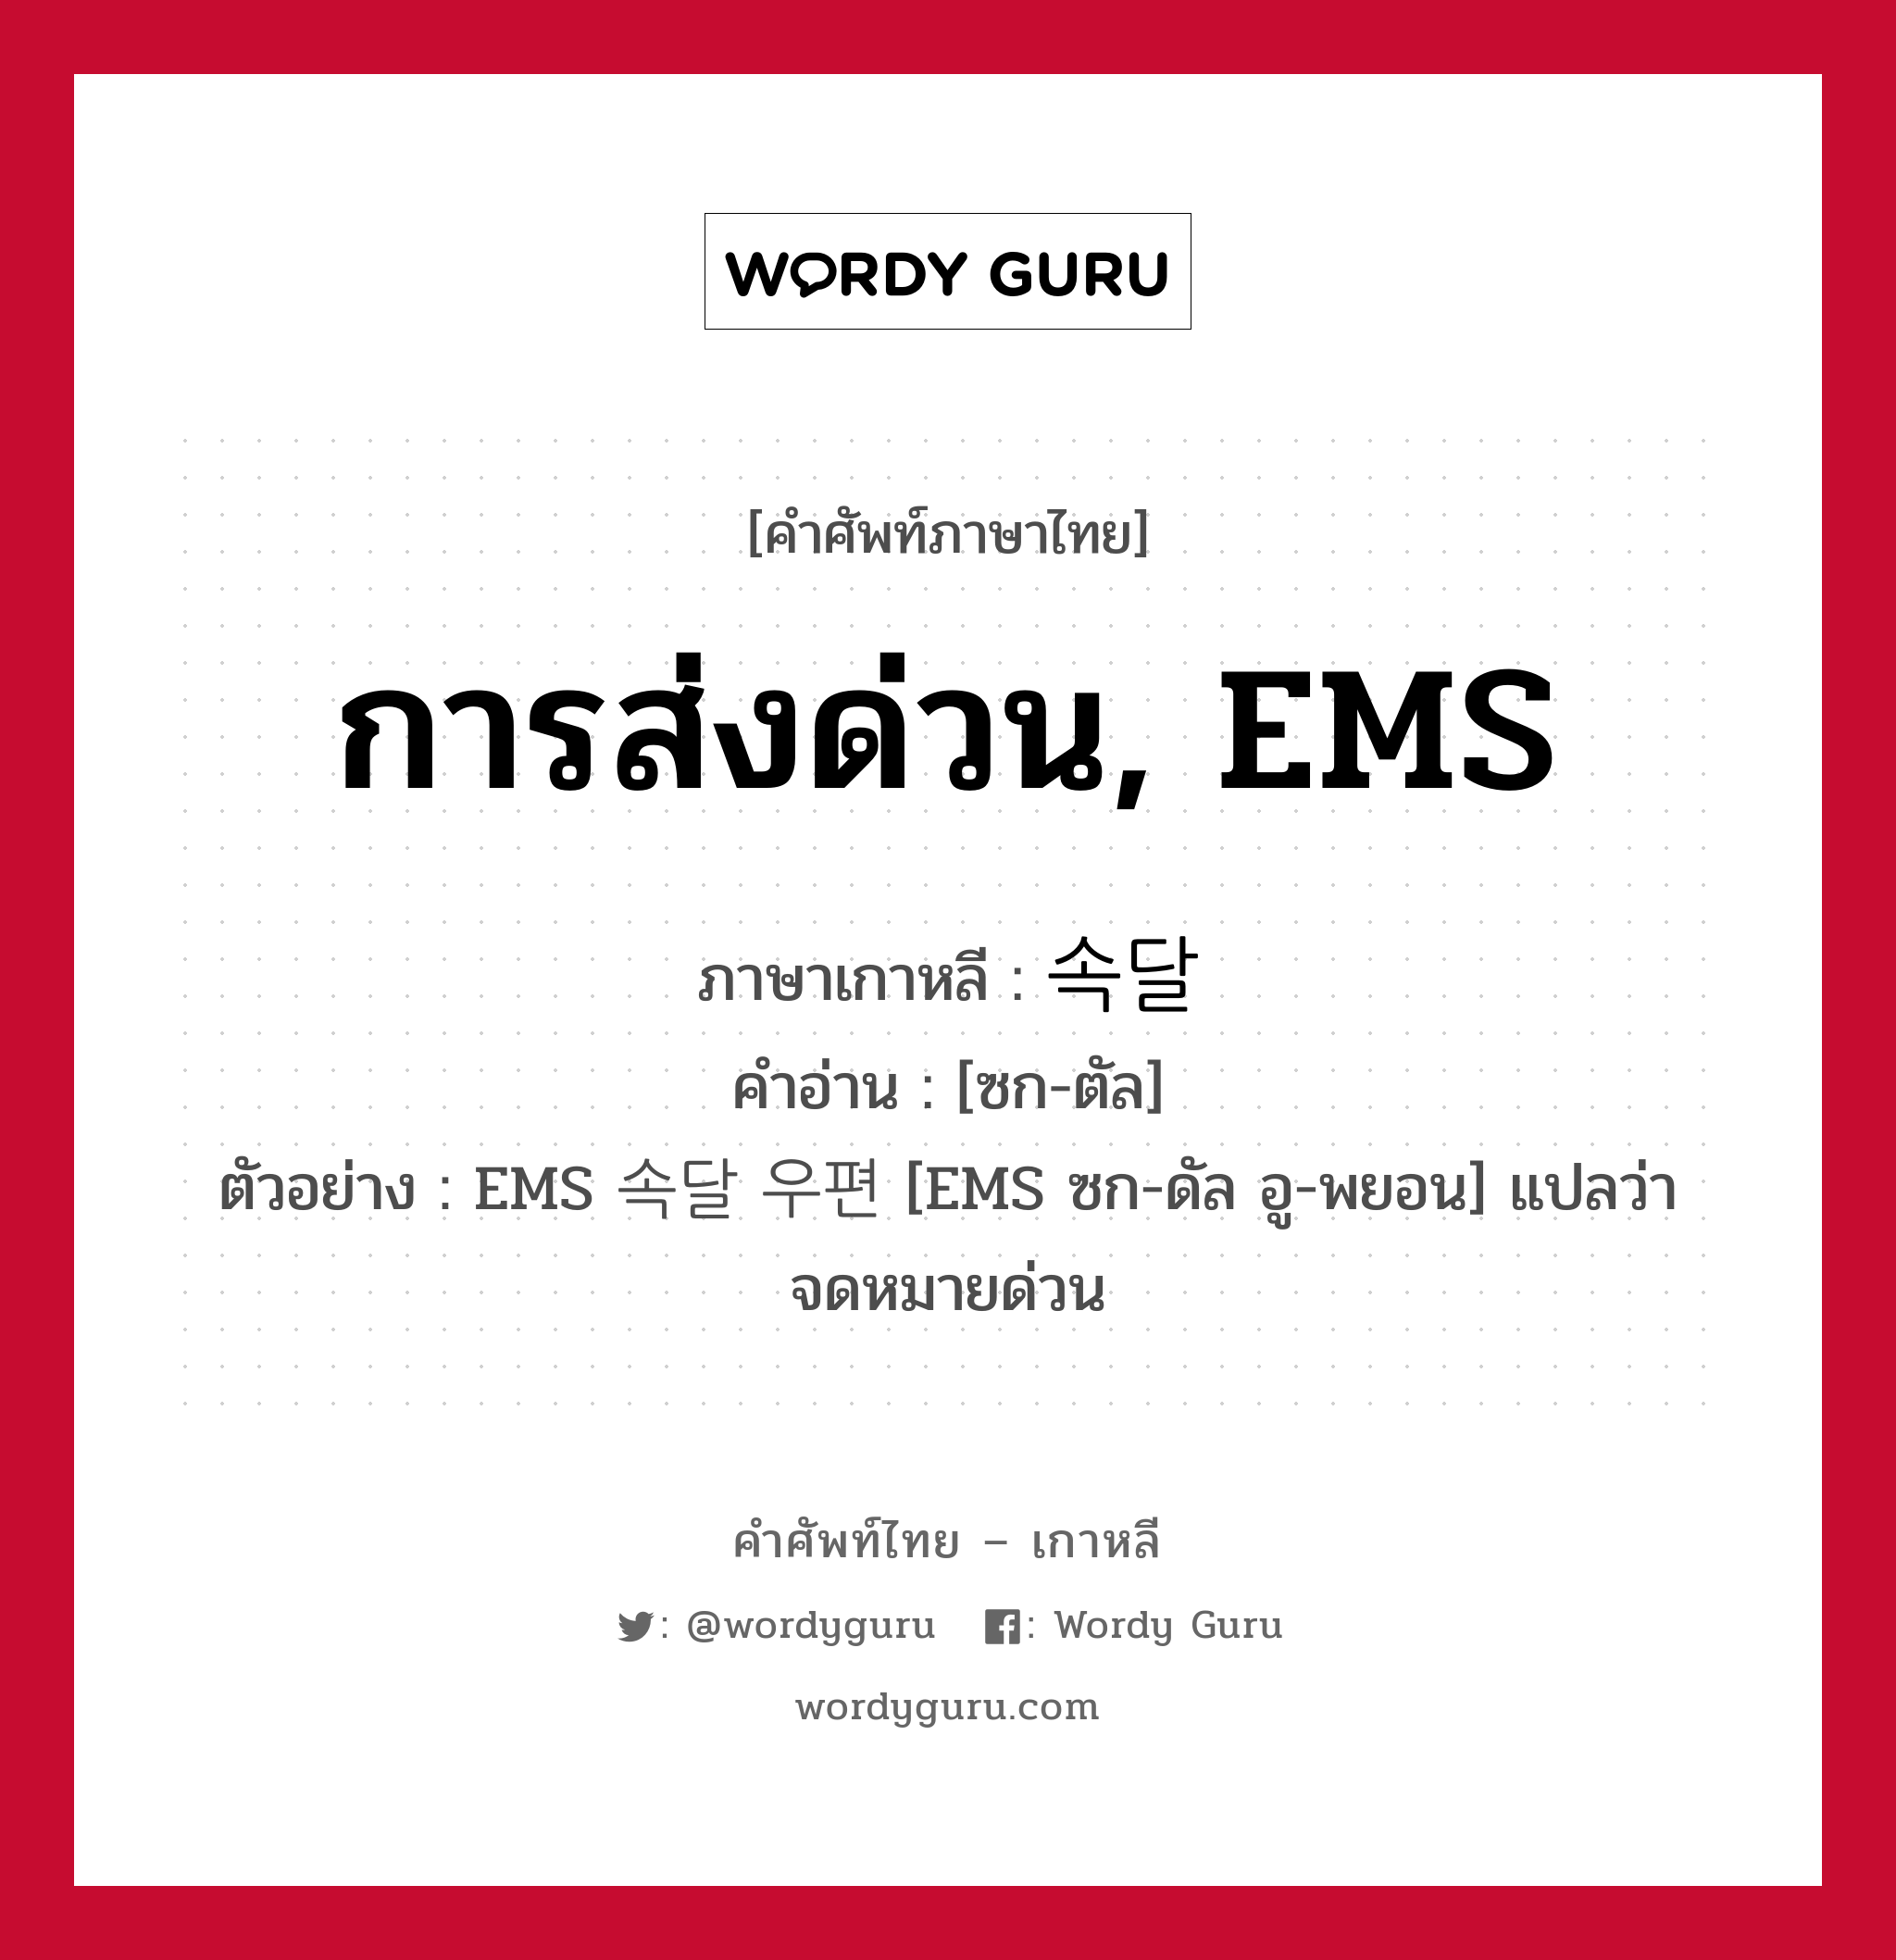 속달 ภาษาไทย?, คำศัพท์ภาษาไทย - เกาหลี 속달 ภาษาเกาหลี การส่งด่วน, EMS คำอ่าน [ซก-ตัล] ตัวอย่าง EMS 속달 우편 [EMS ซก-ดัล อู-พยอน] แปลว่า จดหมายด่วน